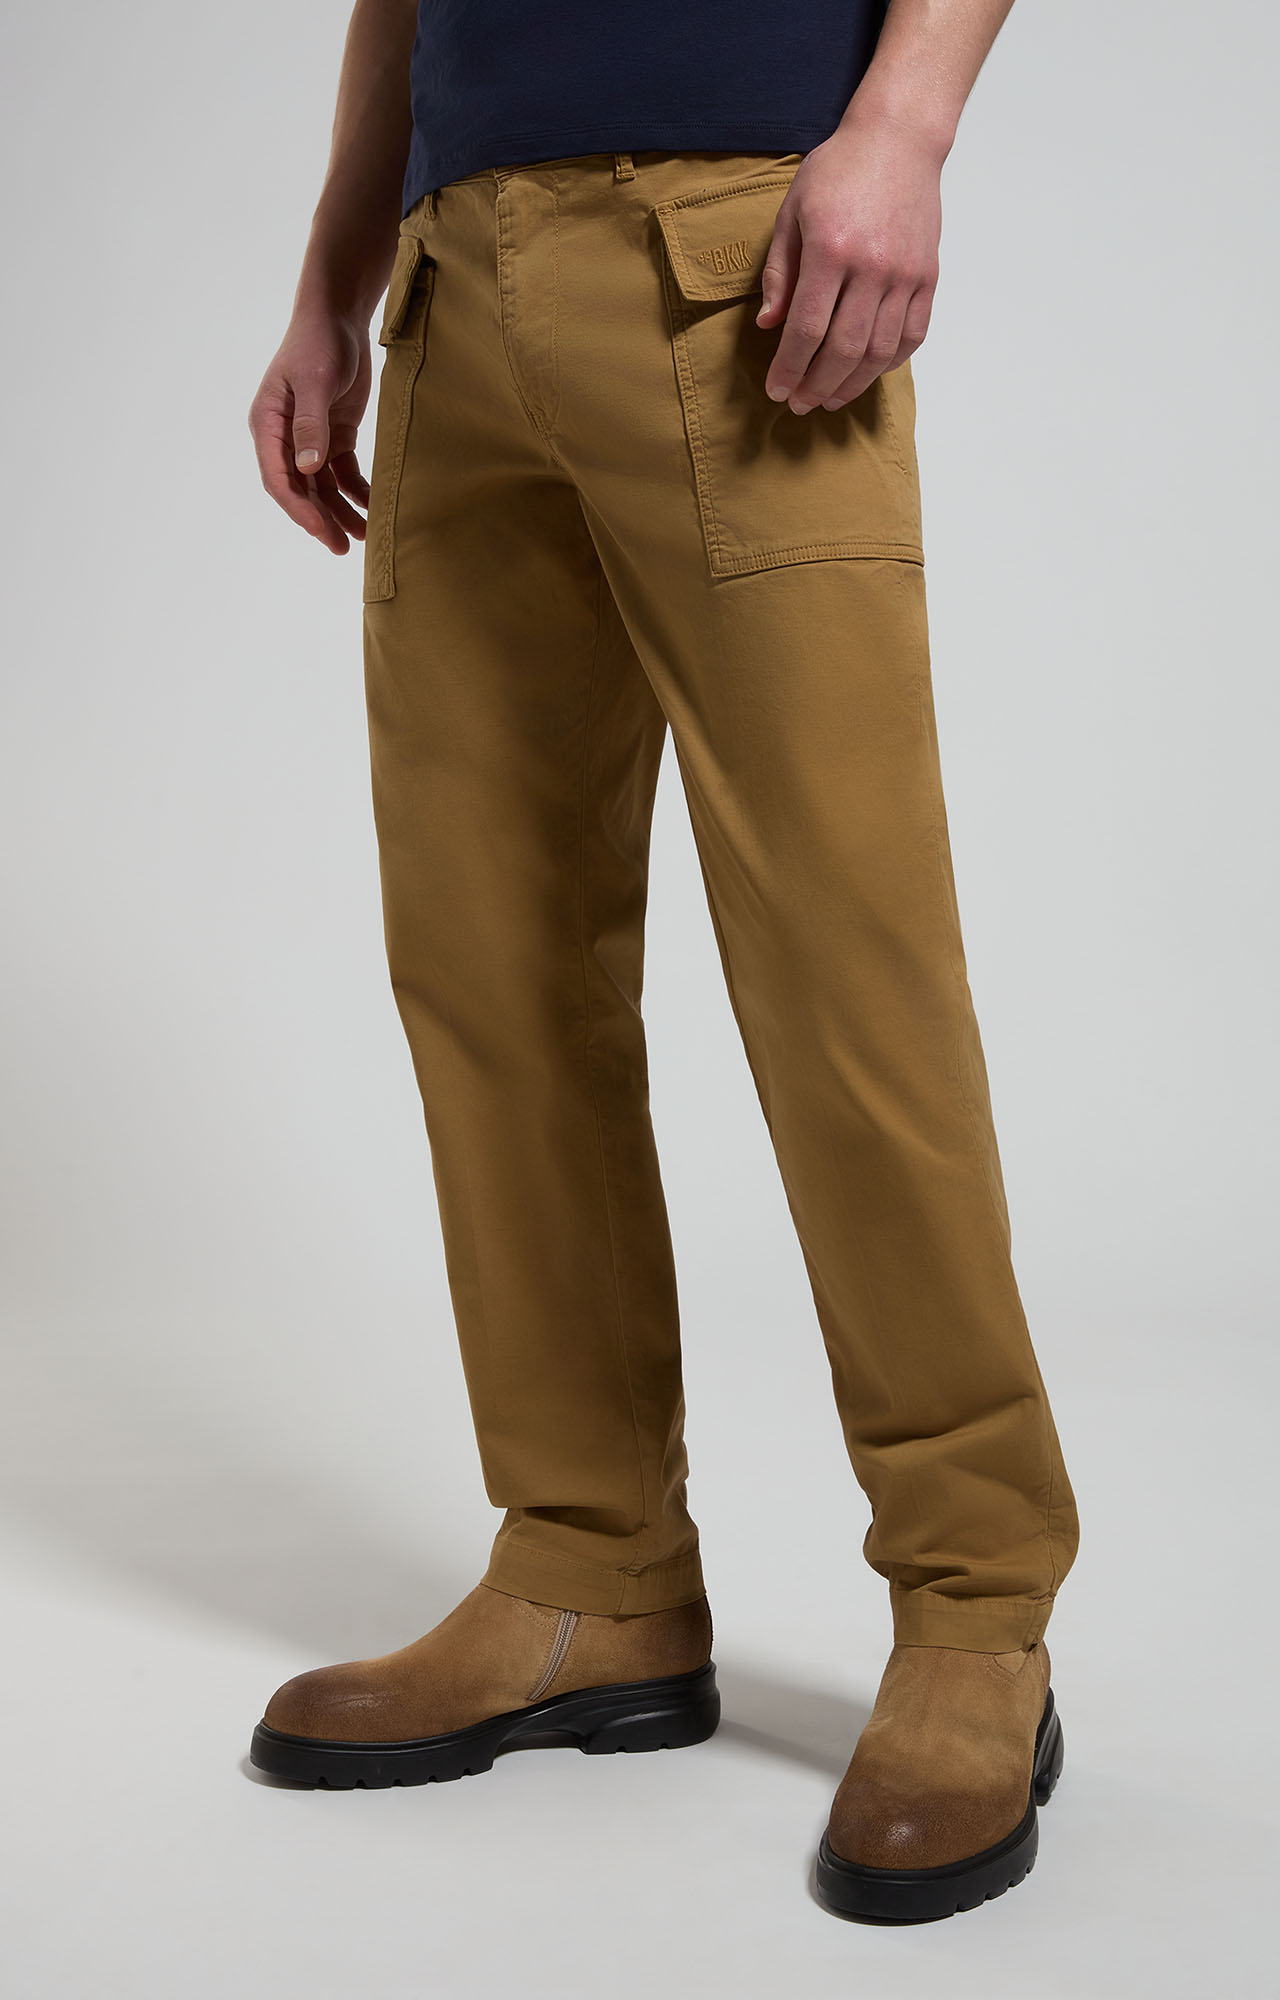 Men's Brown cargo pants